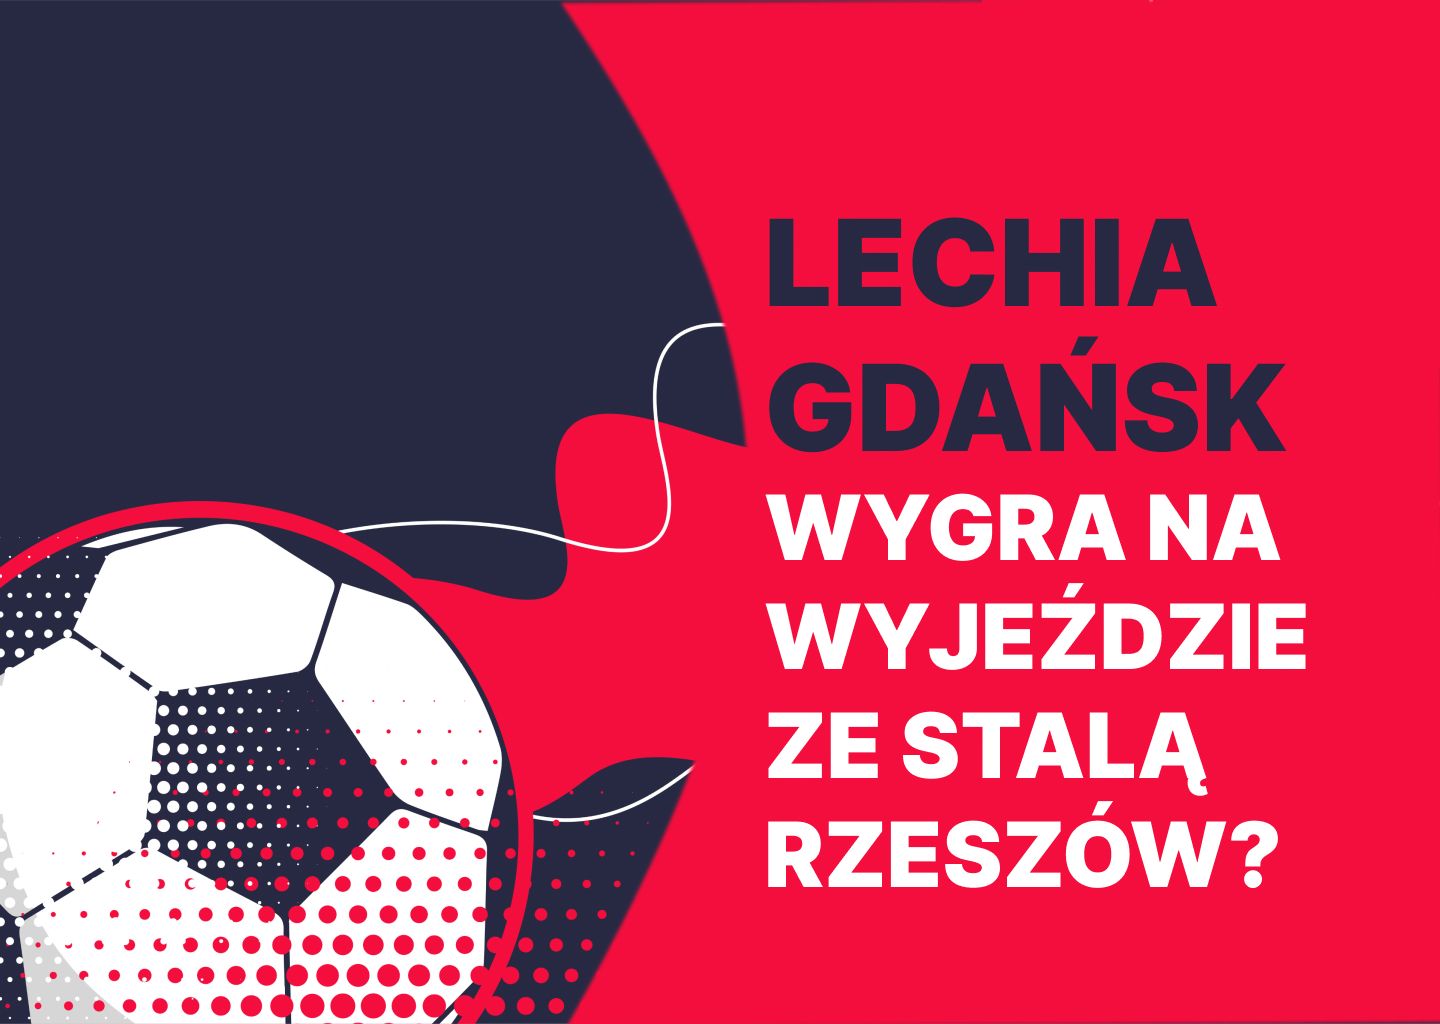 Lechia Gdańsk wygra na wyjeździe ze Stalą Rzeszów?